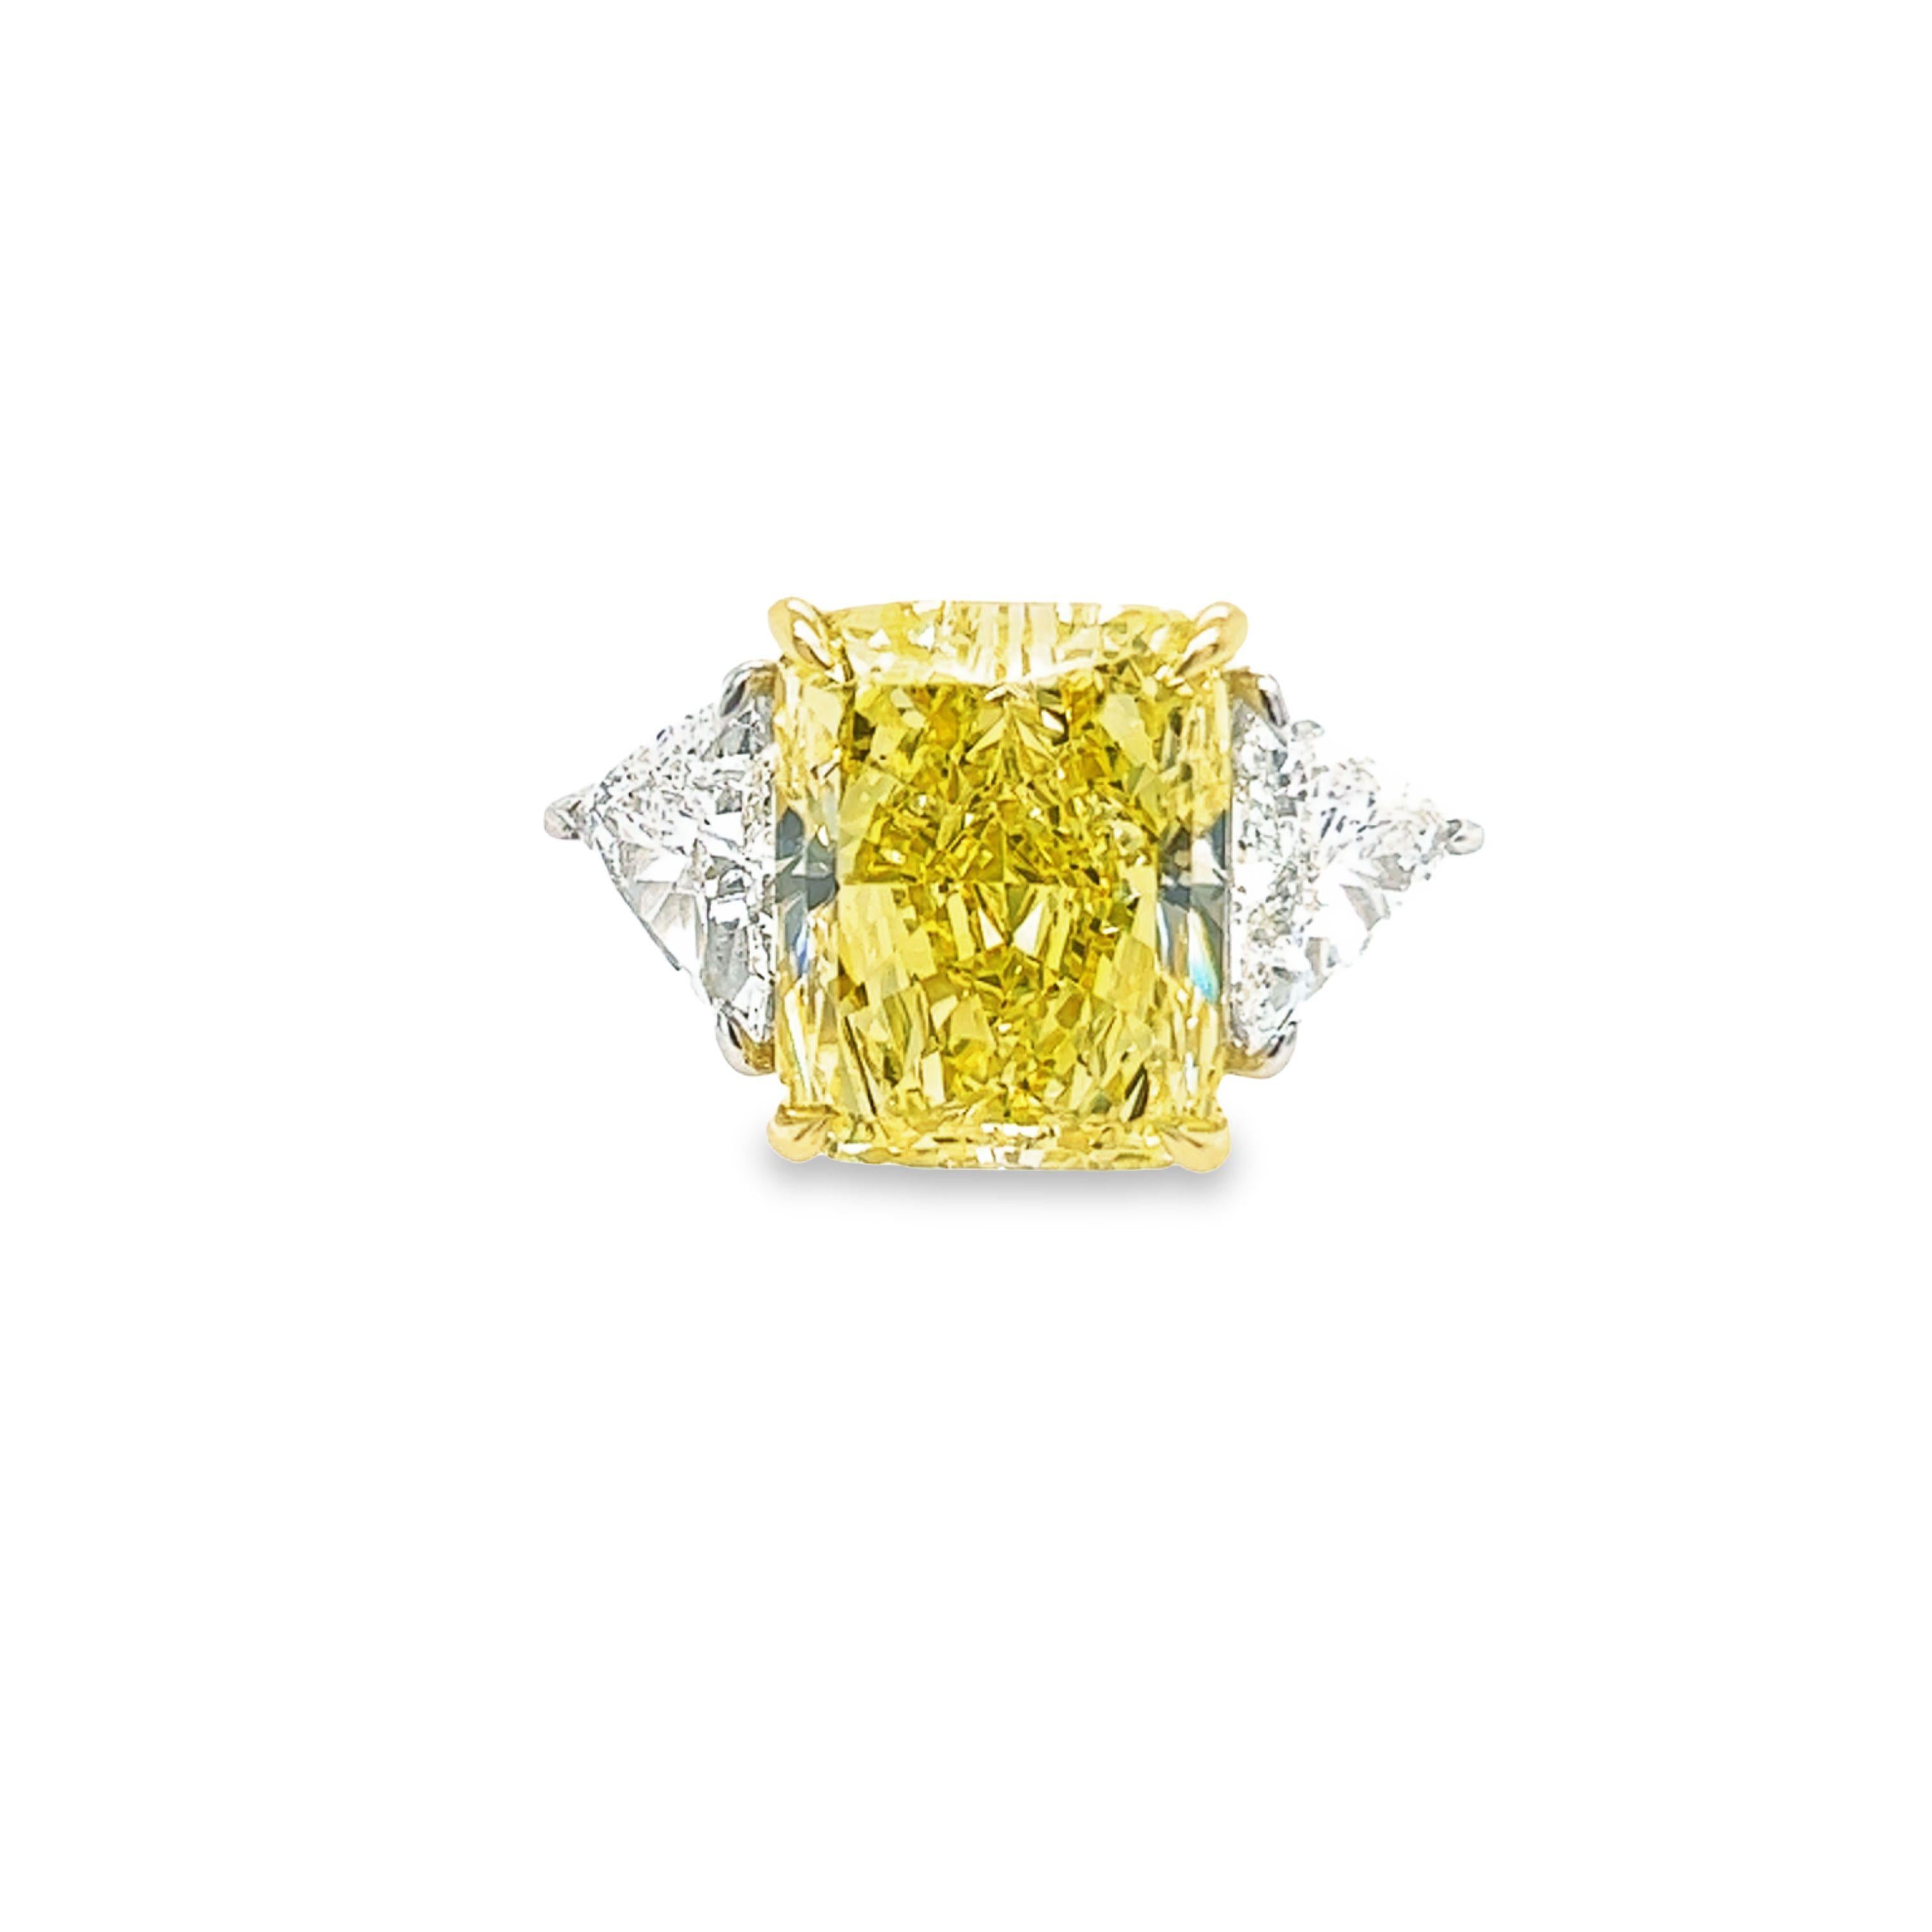 Rosenberg Diamonds and Co. 12,15 Karat Radiant Cut Fancy Intense Yellow VS1 clarity wird von einem GIA-Zertifikat begleitet. Dieser exquisite Strahlenschliff ist in einer handgefertigten Platin- und 18-karätigen Gelbgoldfassung mit einem perfekt